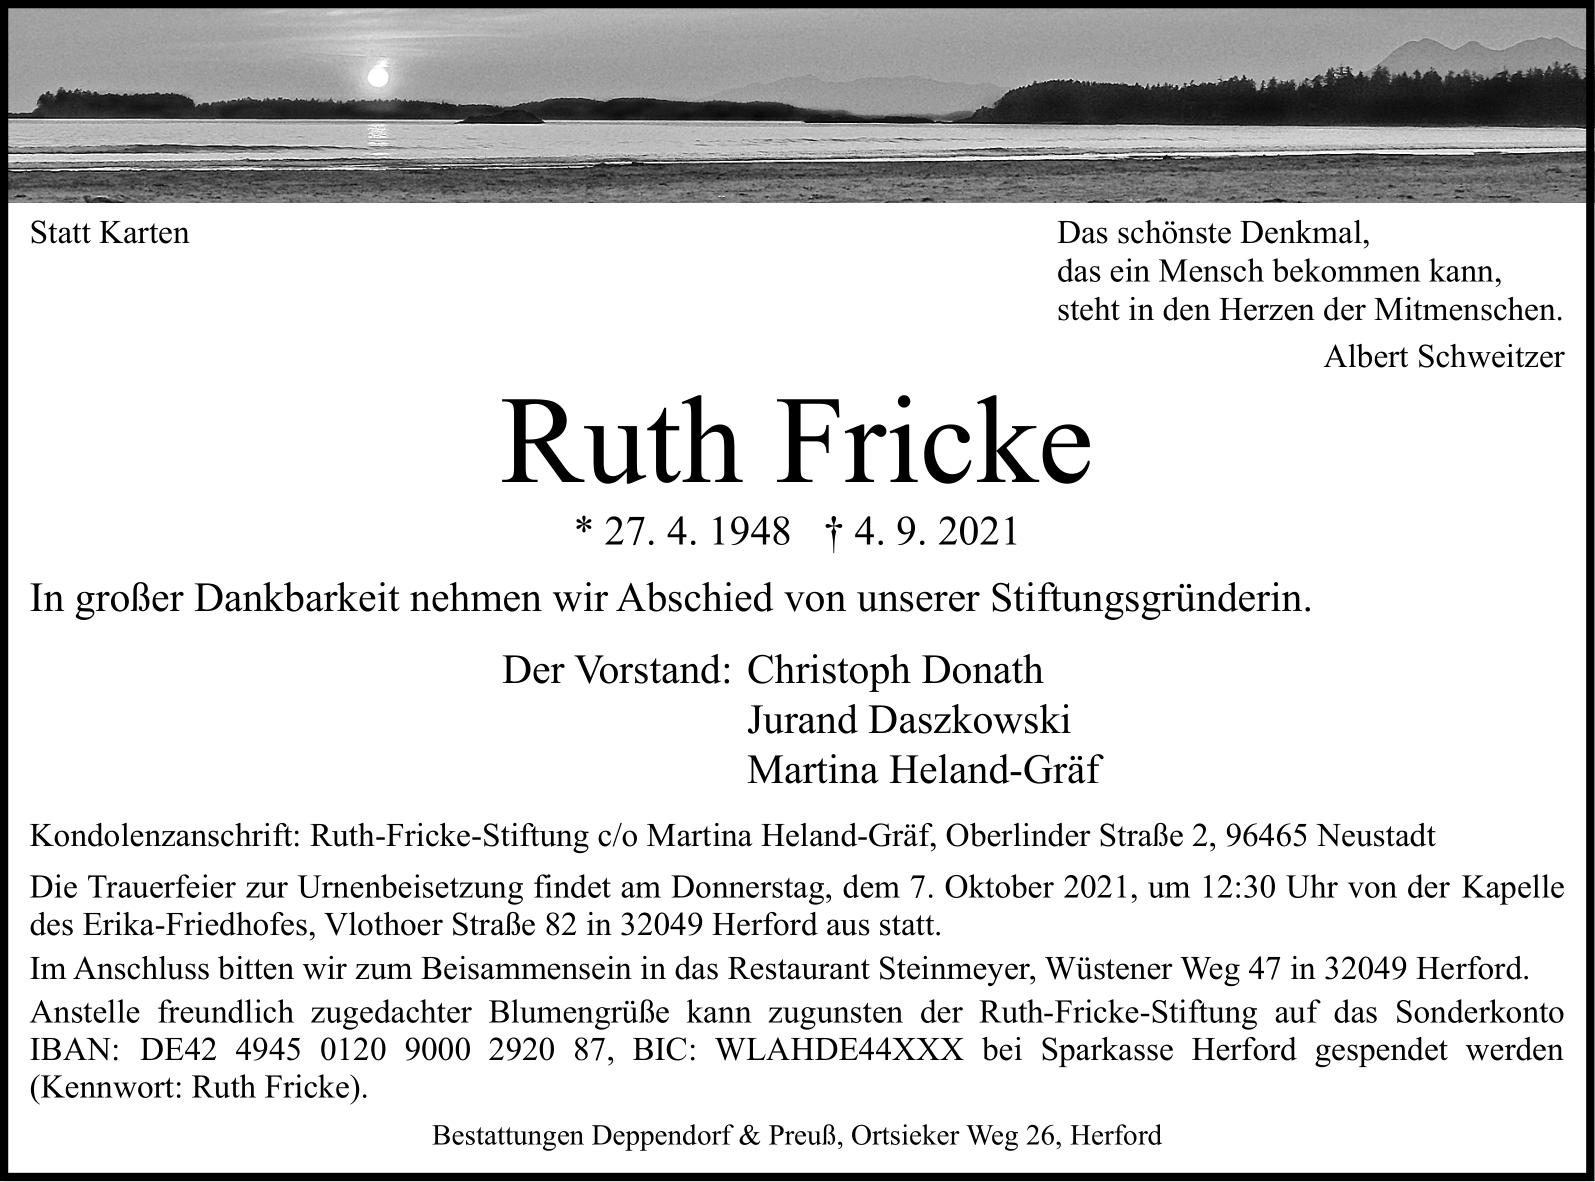 Traueranzeige Ruth Fricke